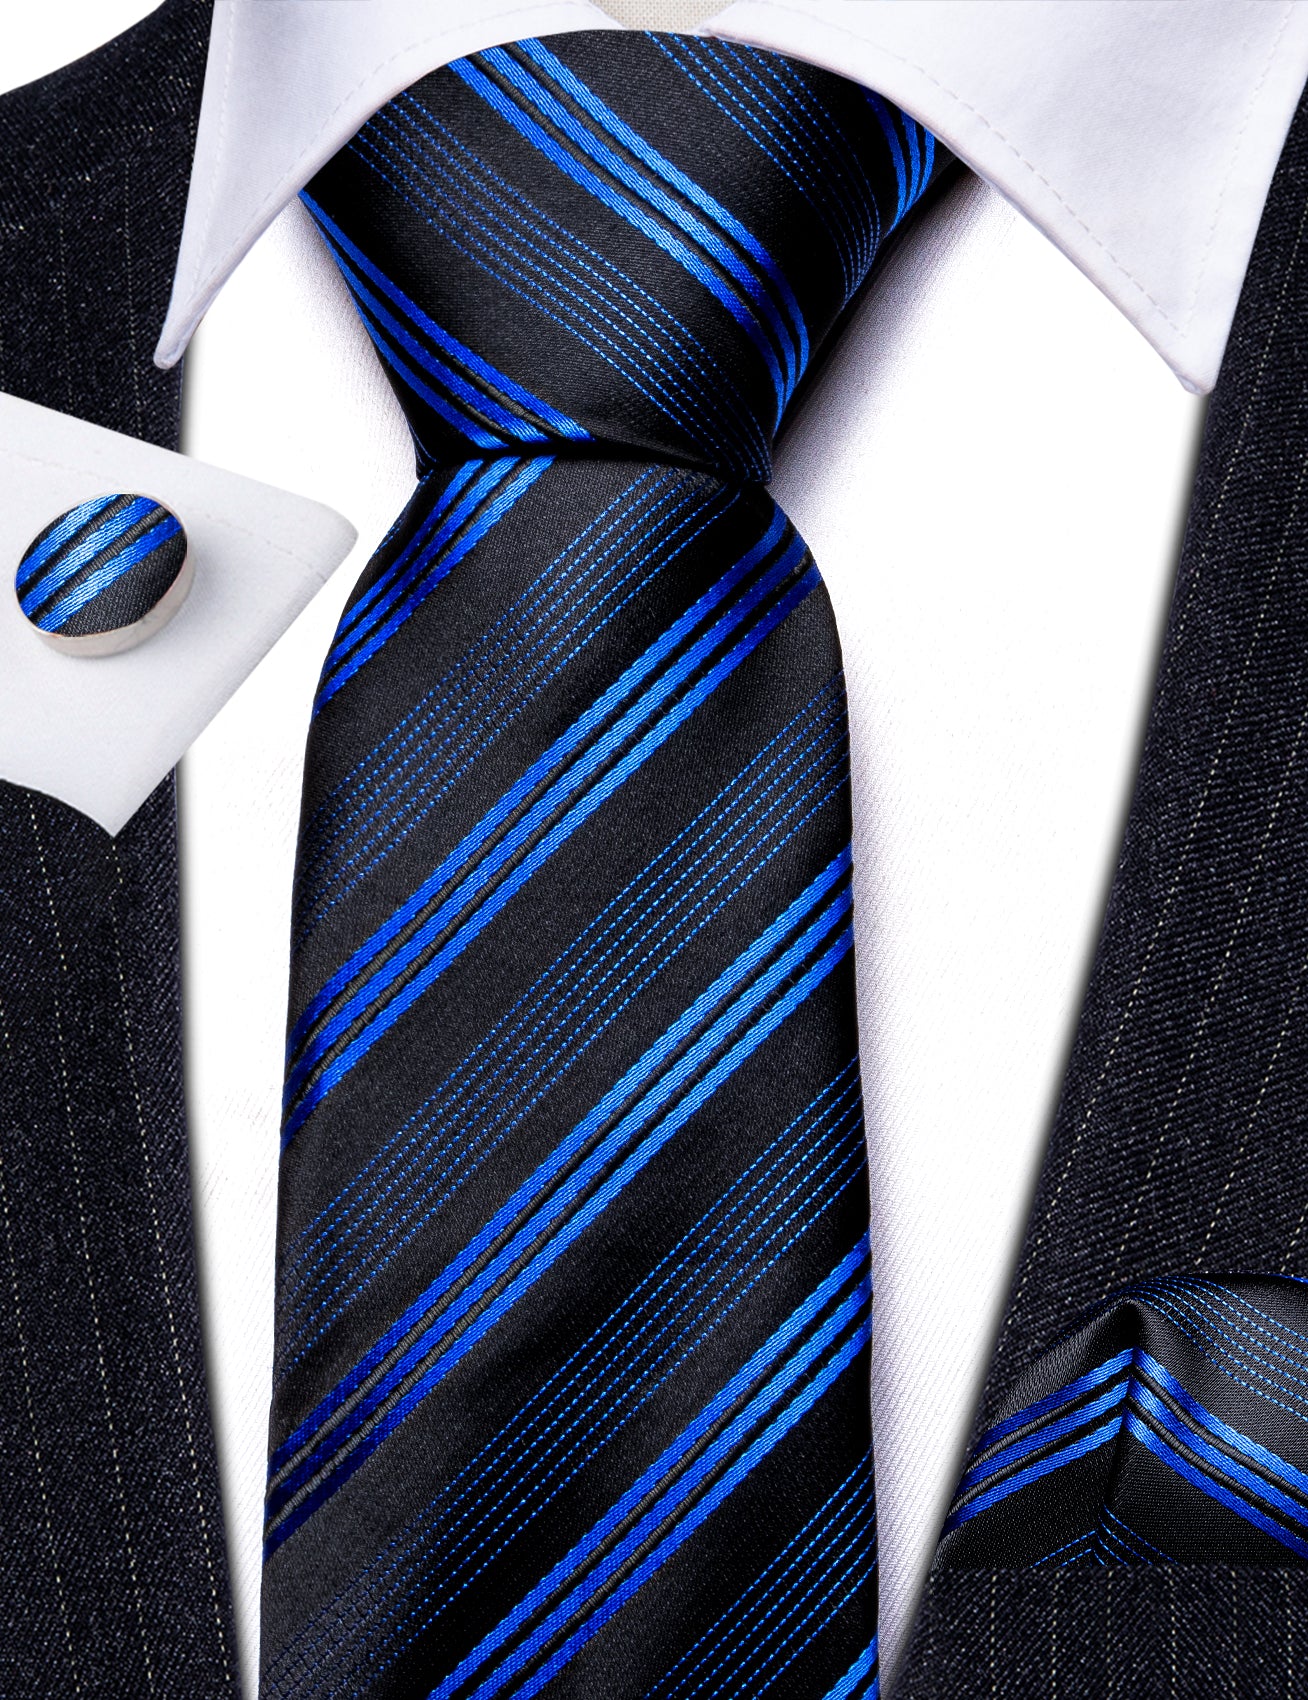 Black Blue Striped Silk Tie Handkerchief Cufflinks Set